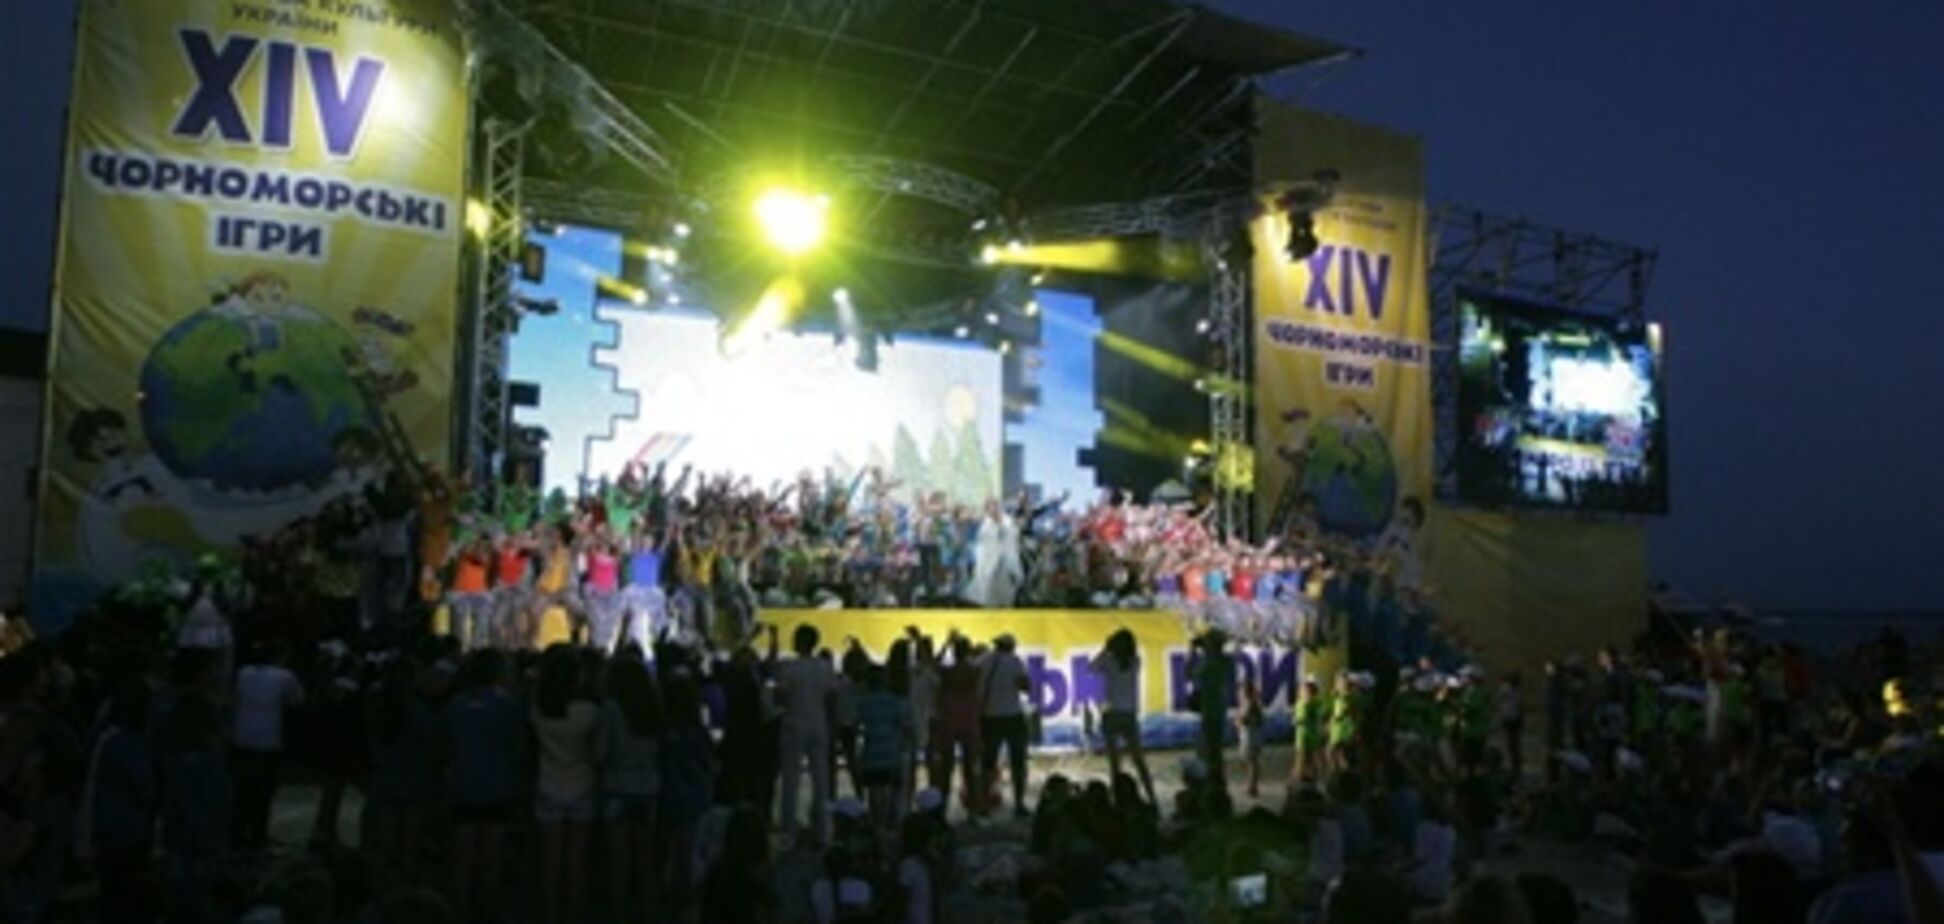 Благодійний дитячий фестиваль 'Чорноморські ігри' назвав своїх переможців